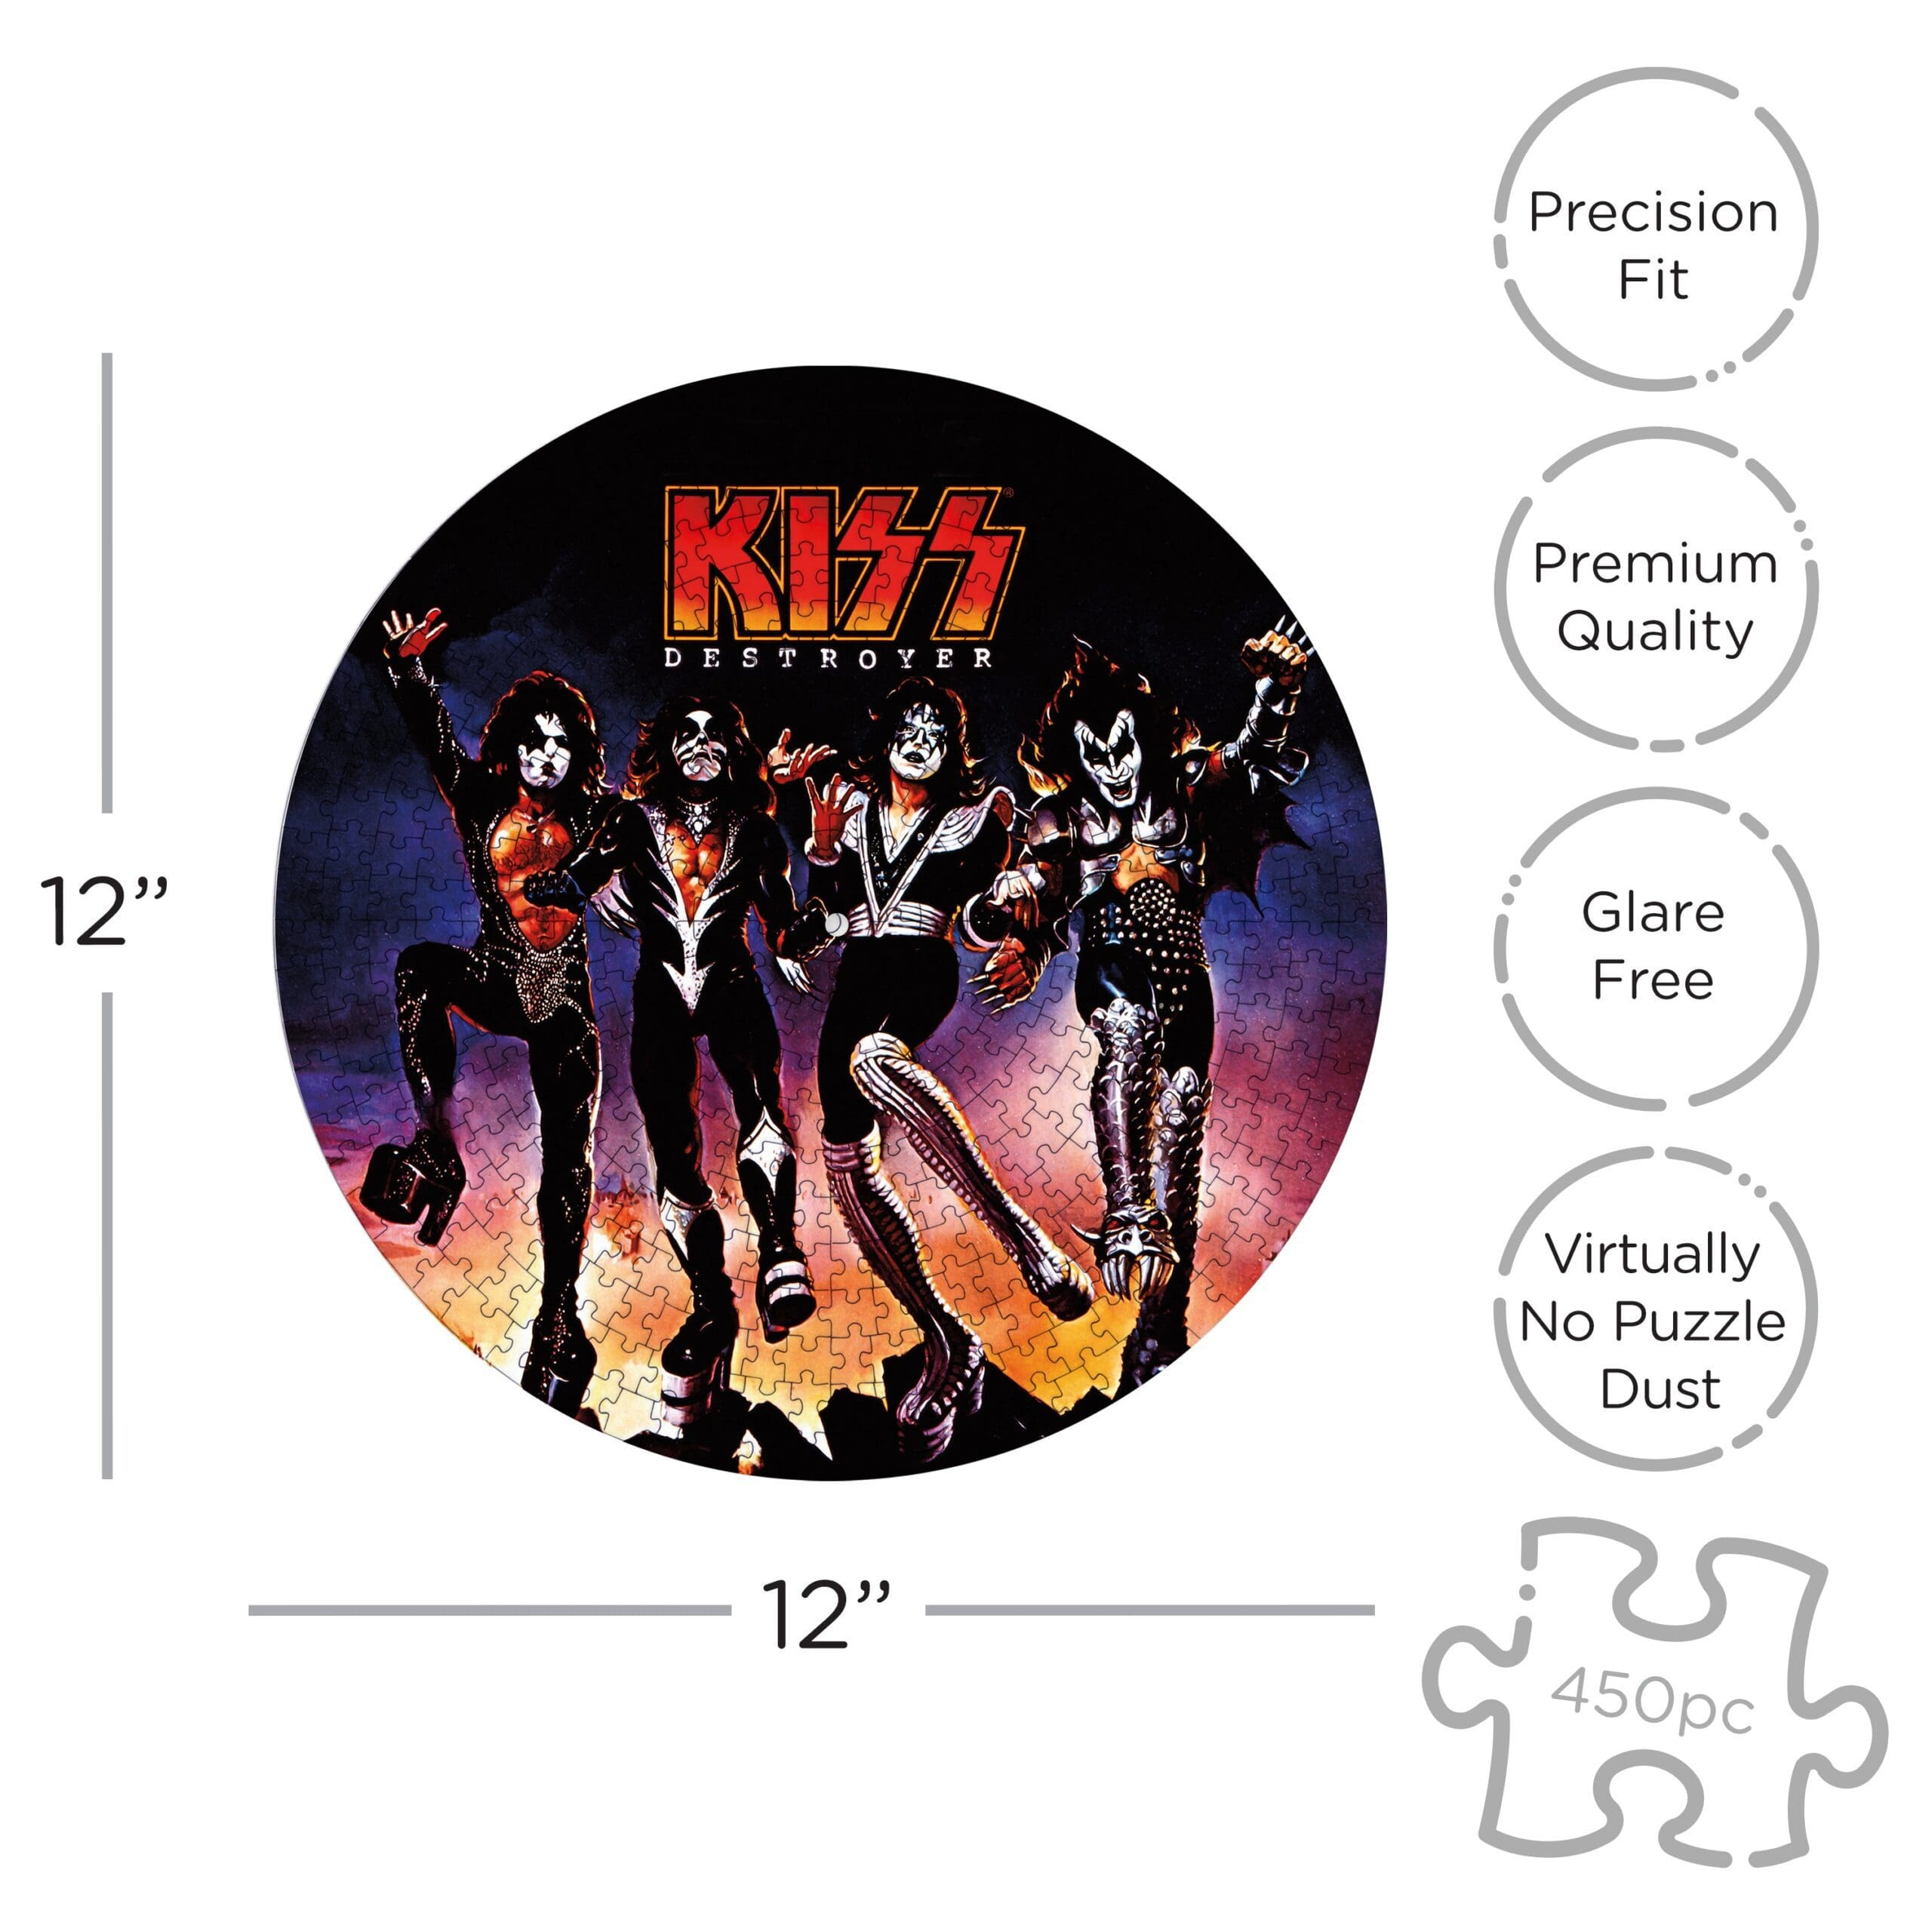 Puzzle - Kiss Destroyer Disc-hotRAGS.com